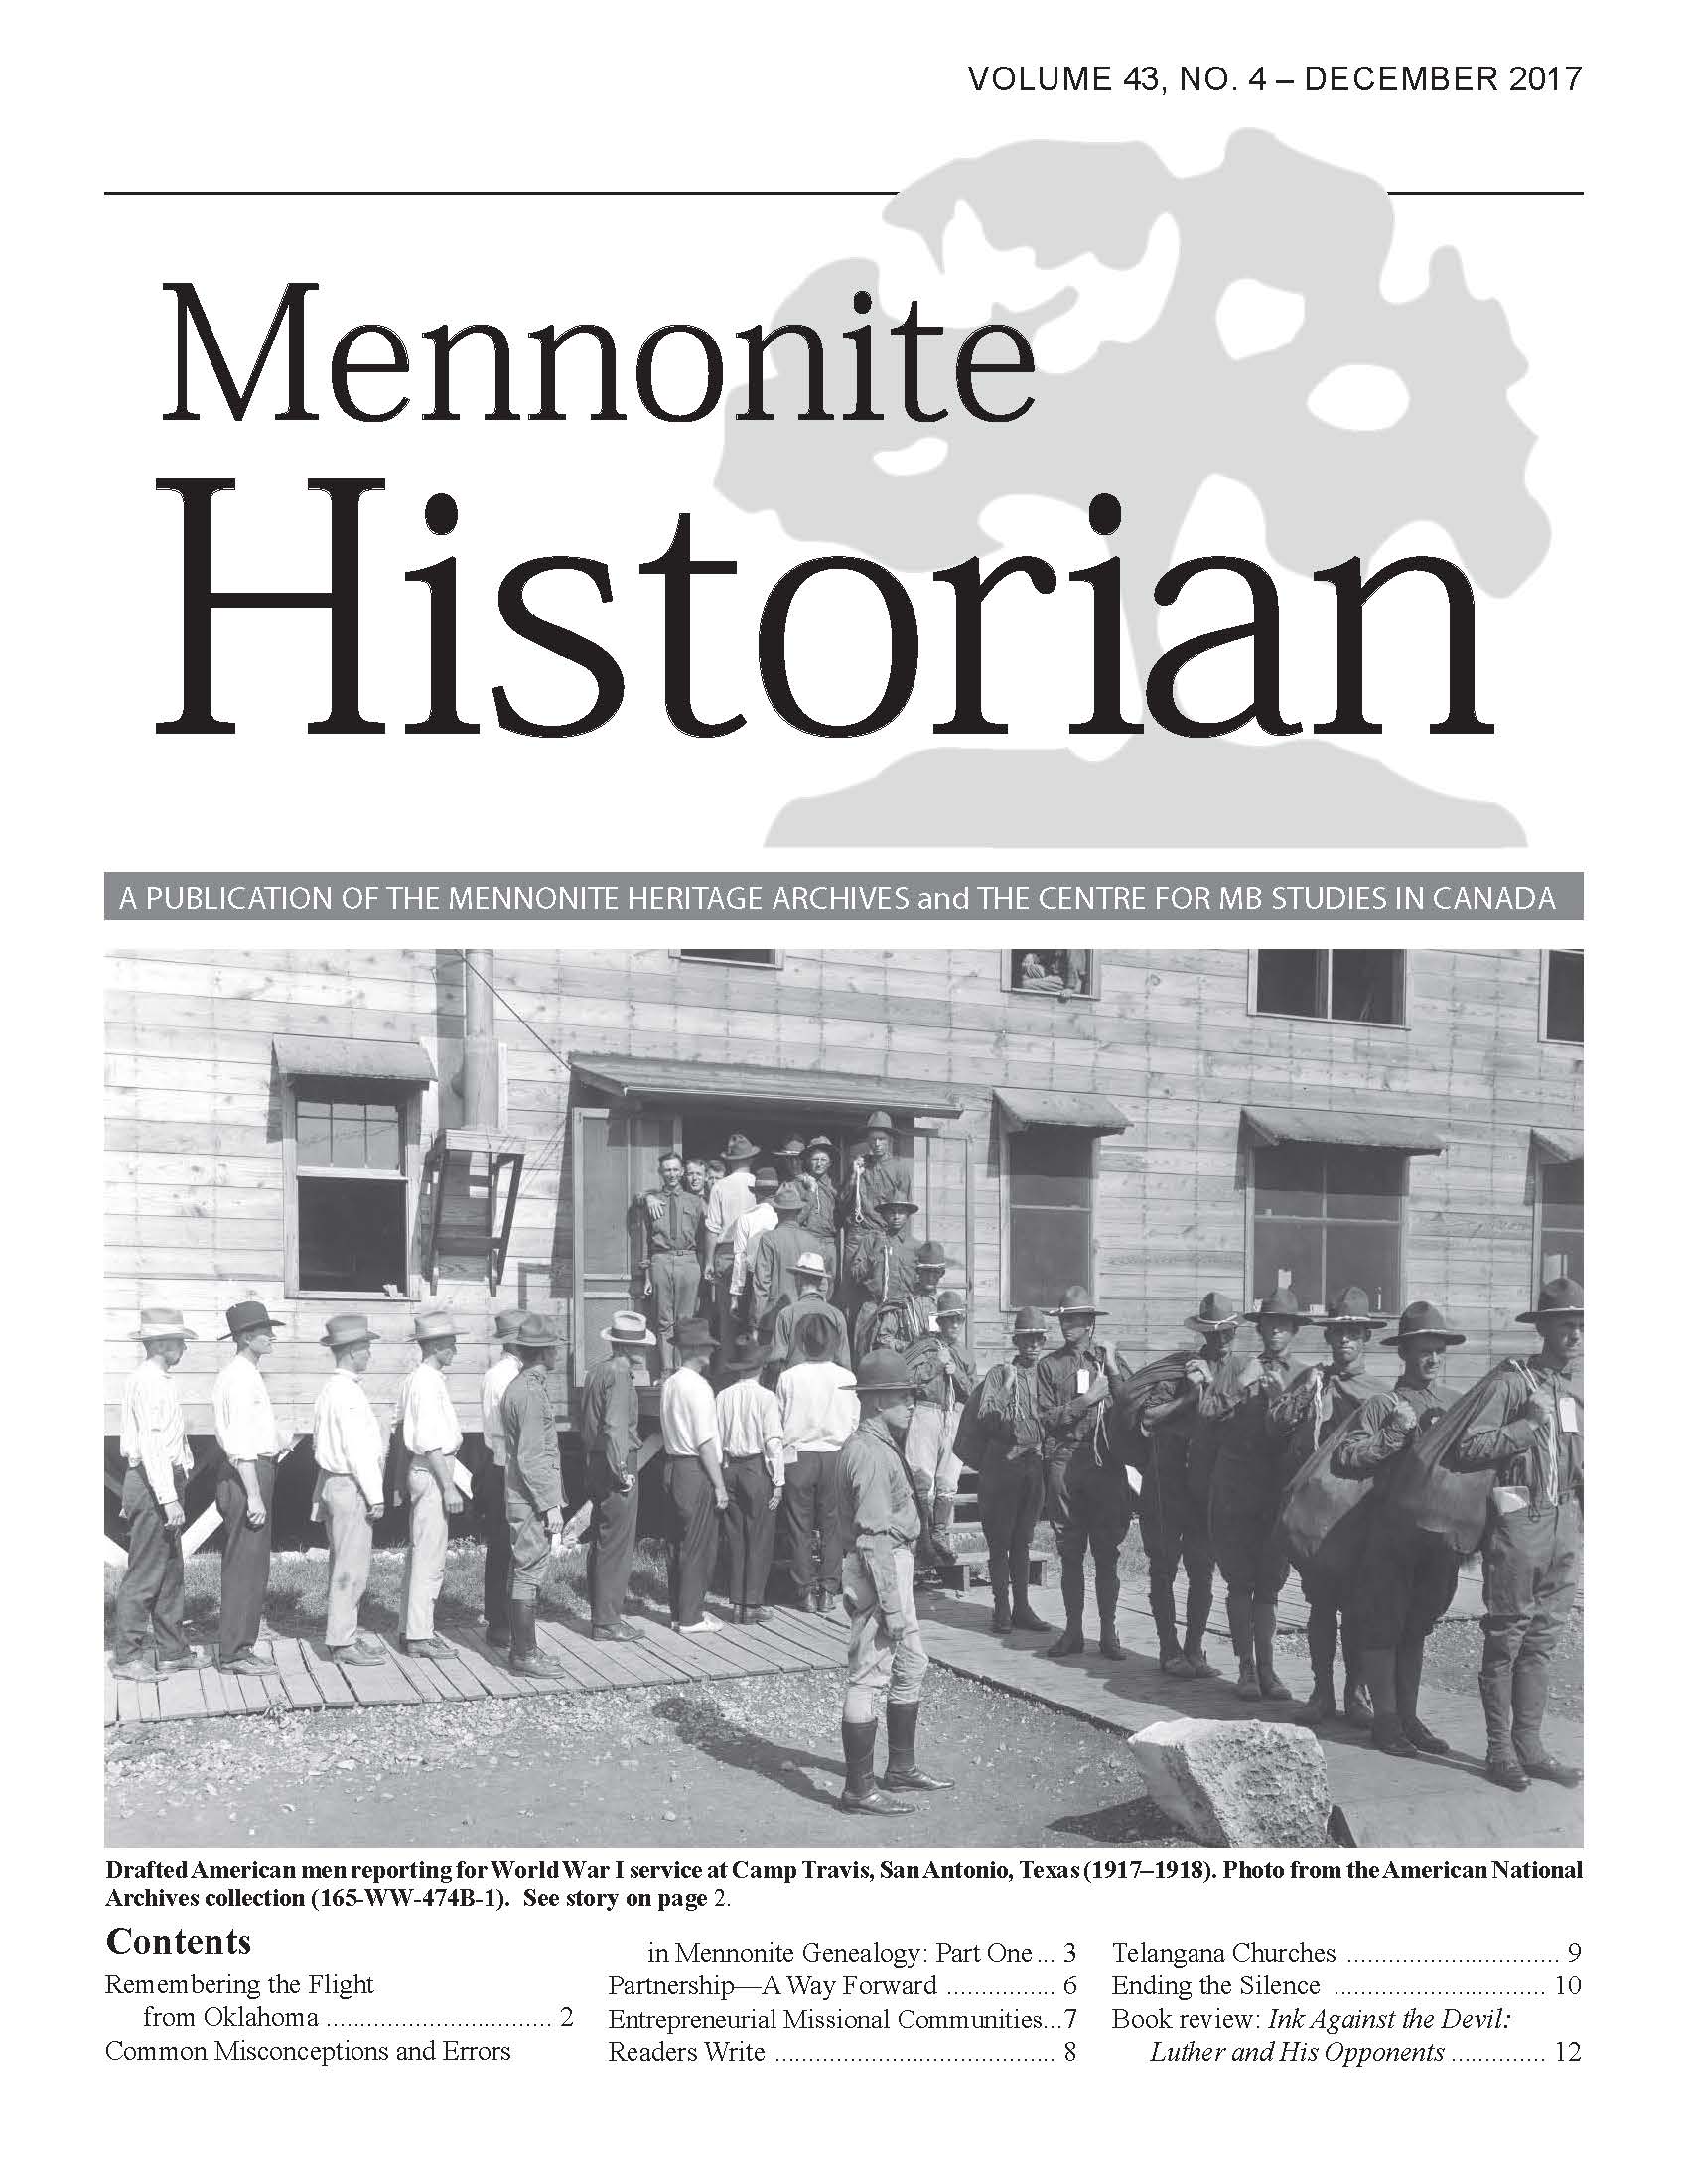 Mennonite Historian (December 2017)